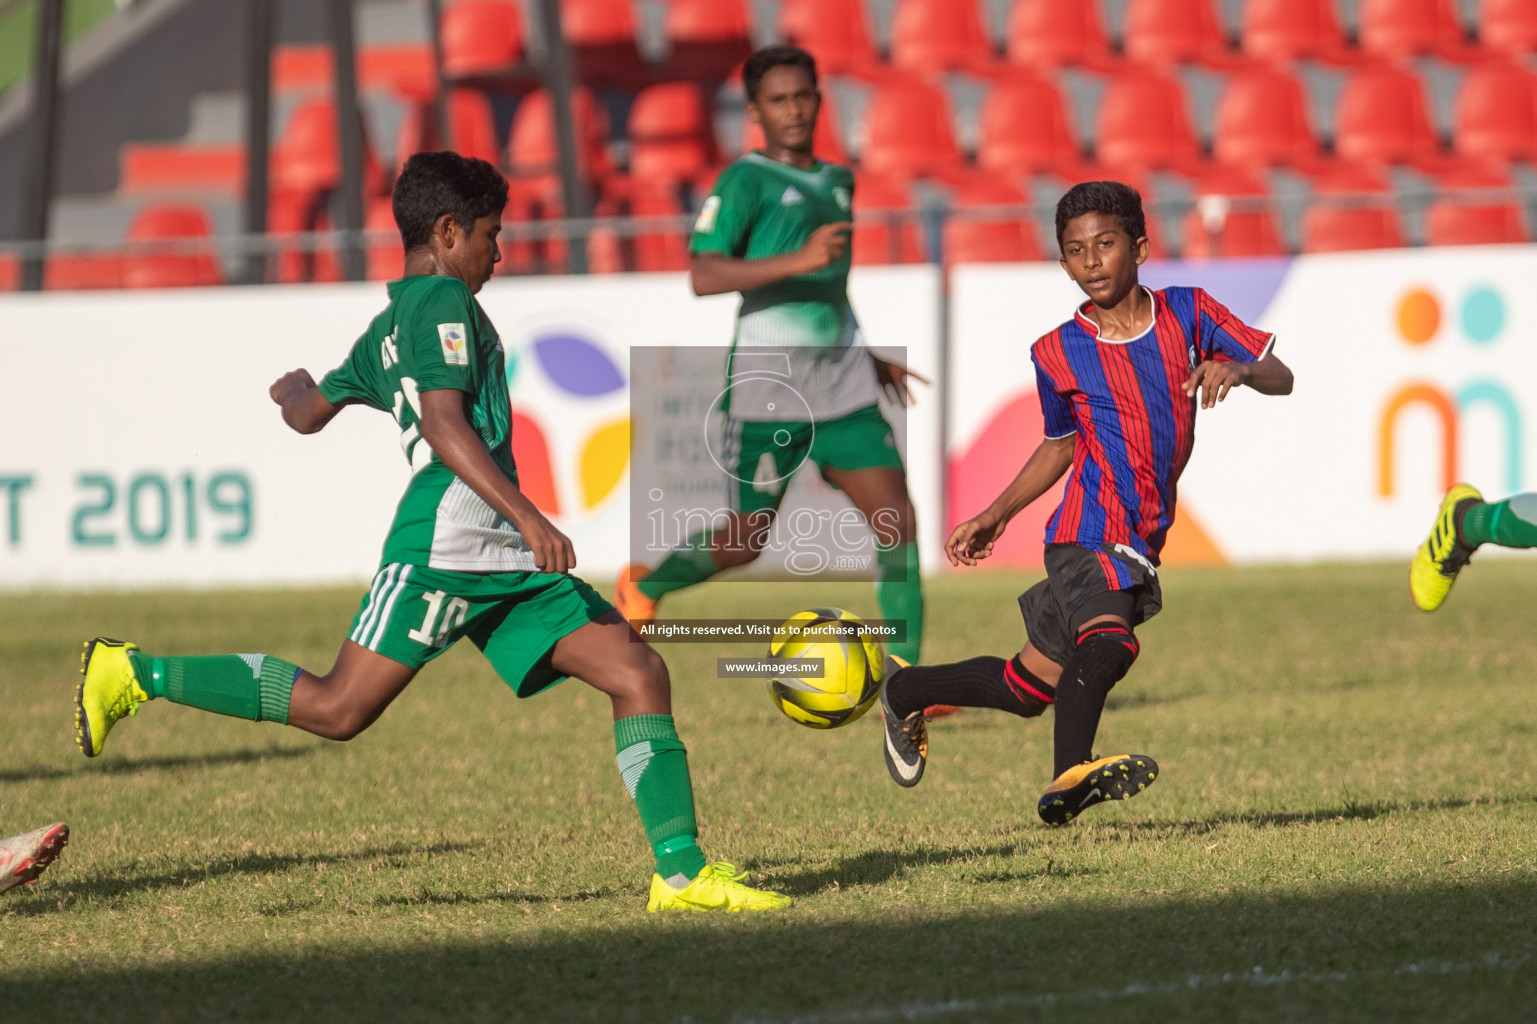 Muhyiddin School vs Aminiyya School in Mamen Inter-School Football Tournament 2019 (U15) on 9th March 2019, in Male' Maldives (Images.mv Photo: Suadh Abdul Sattar)